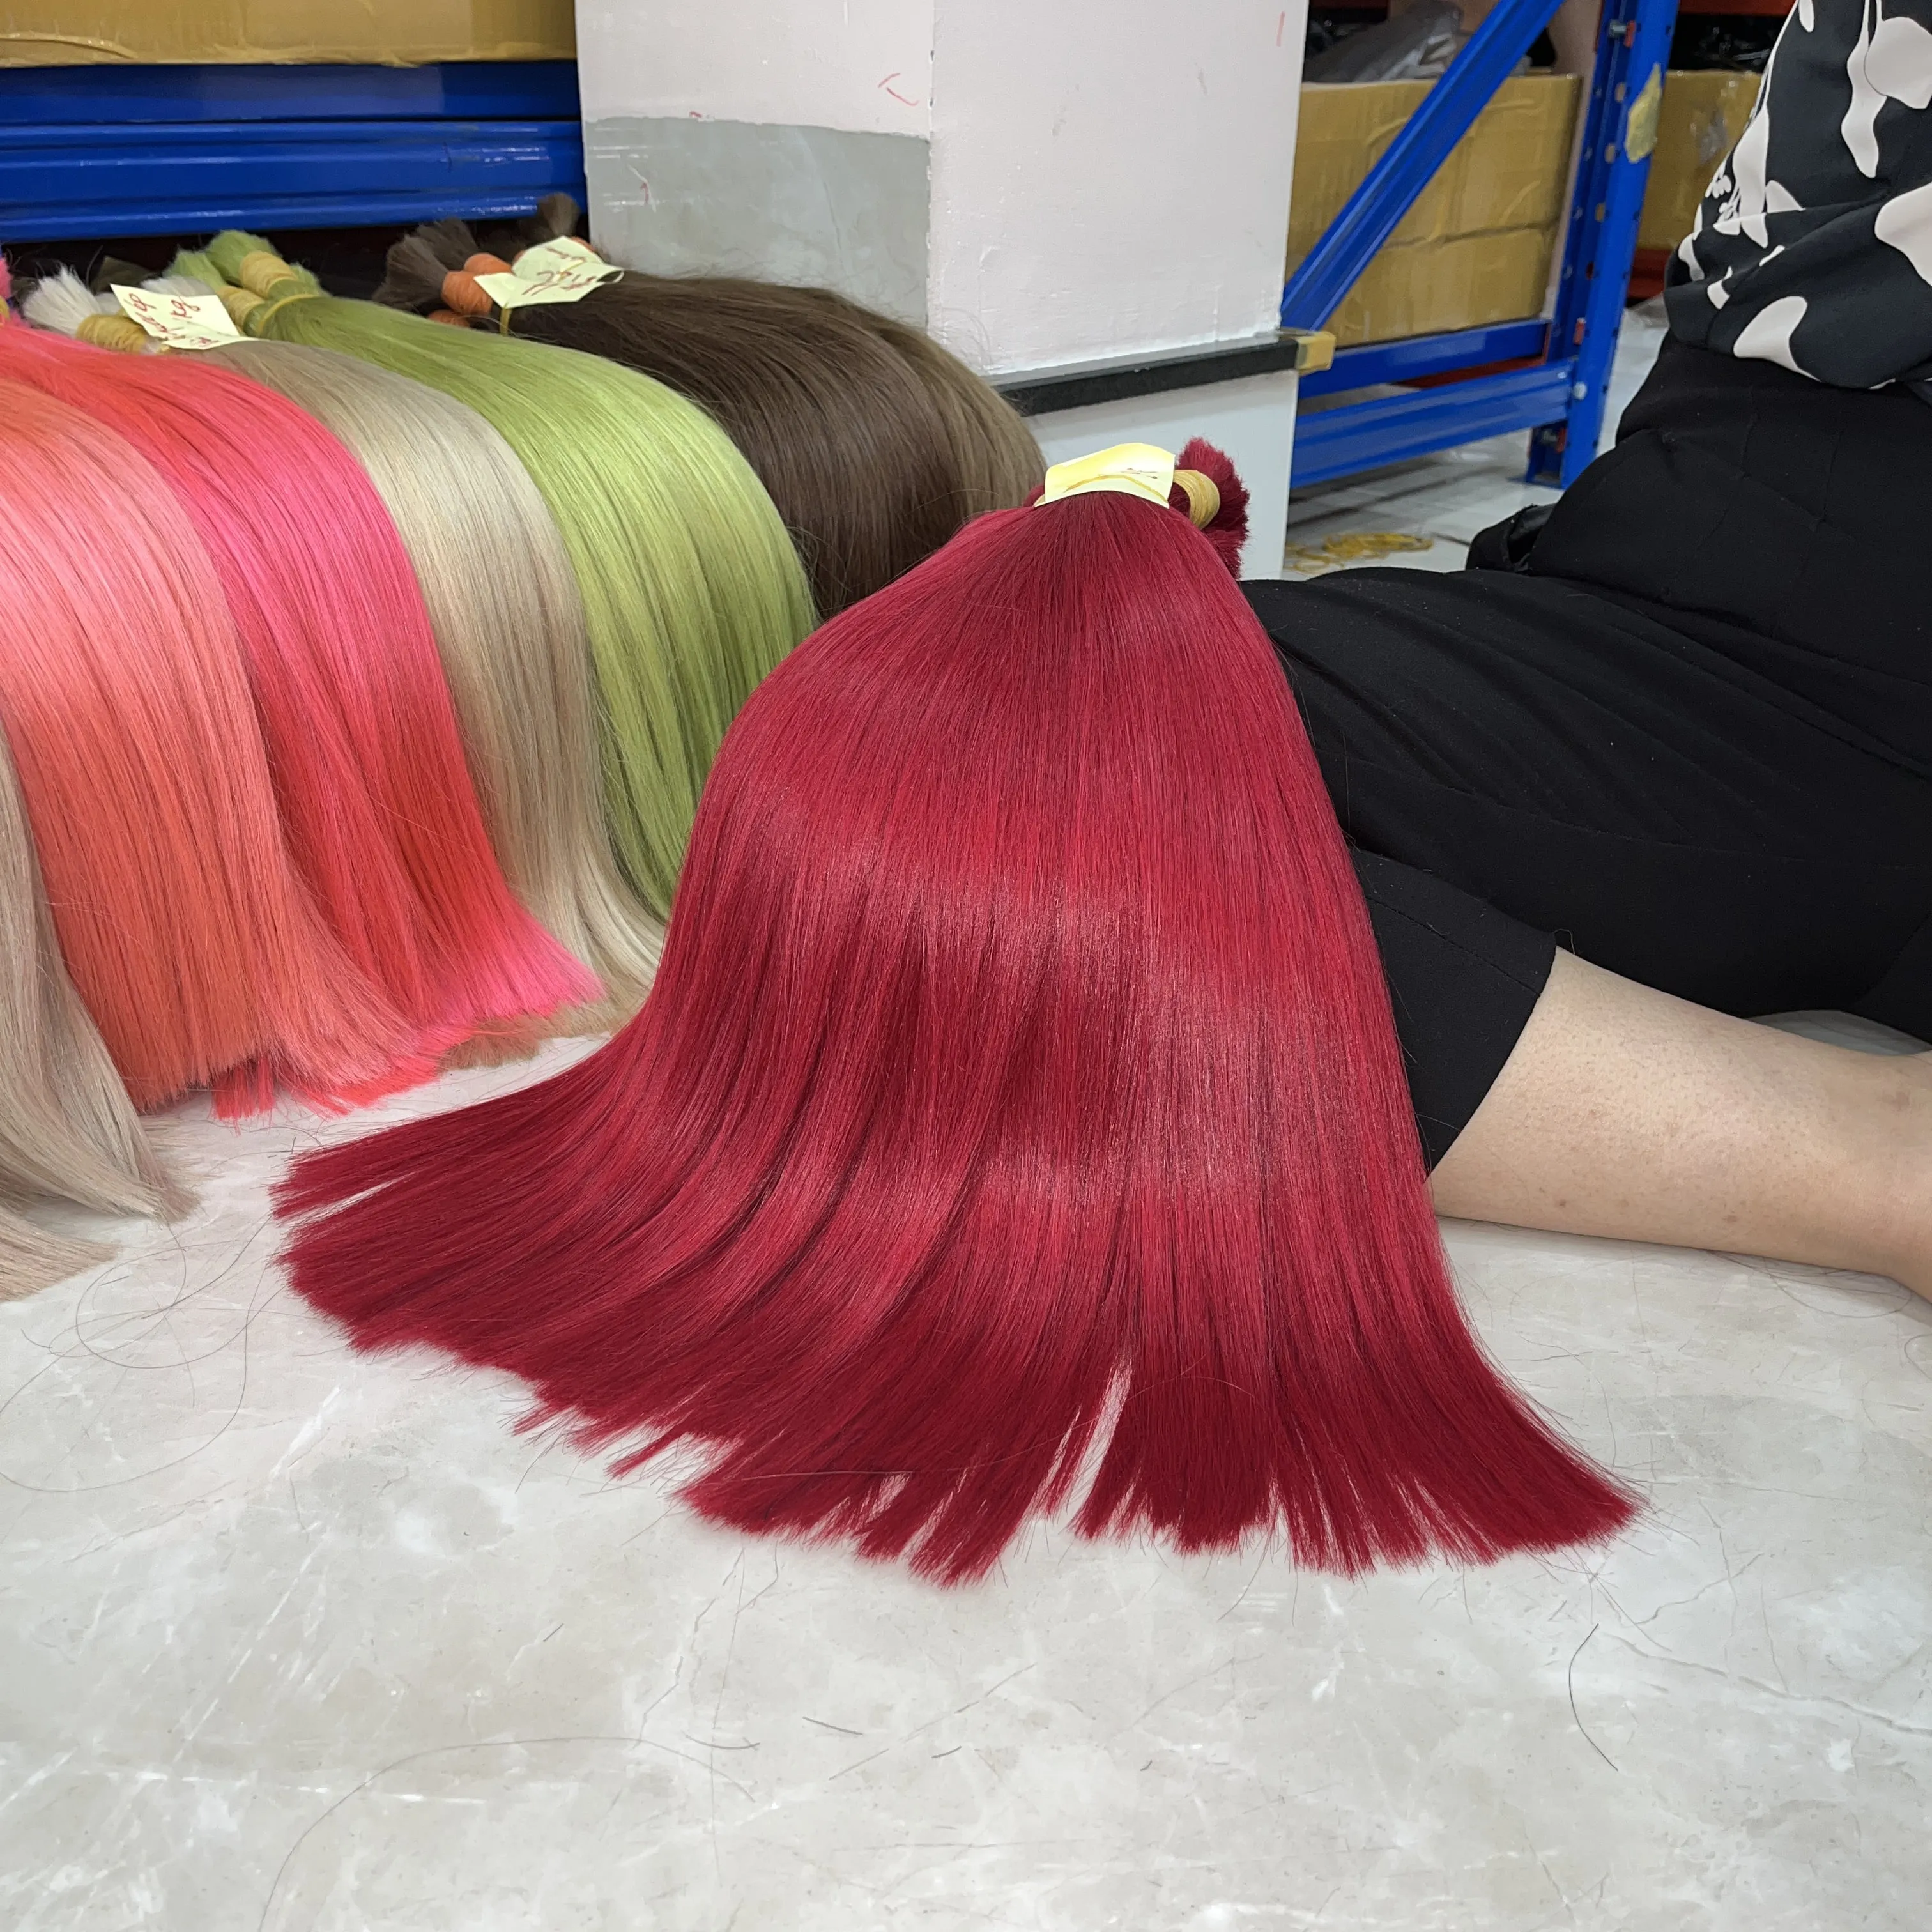 Kırmızı renk saç ekleme 100% insan saçı yüksek kaliteli vietnam saç fabrikası ile ucuz fiyat ve ücretsiz örnek